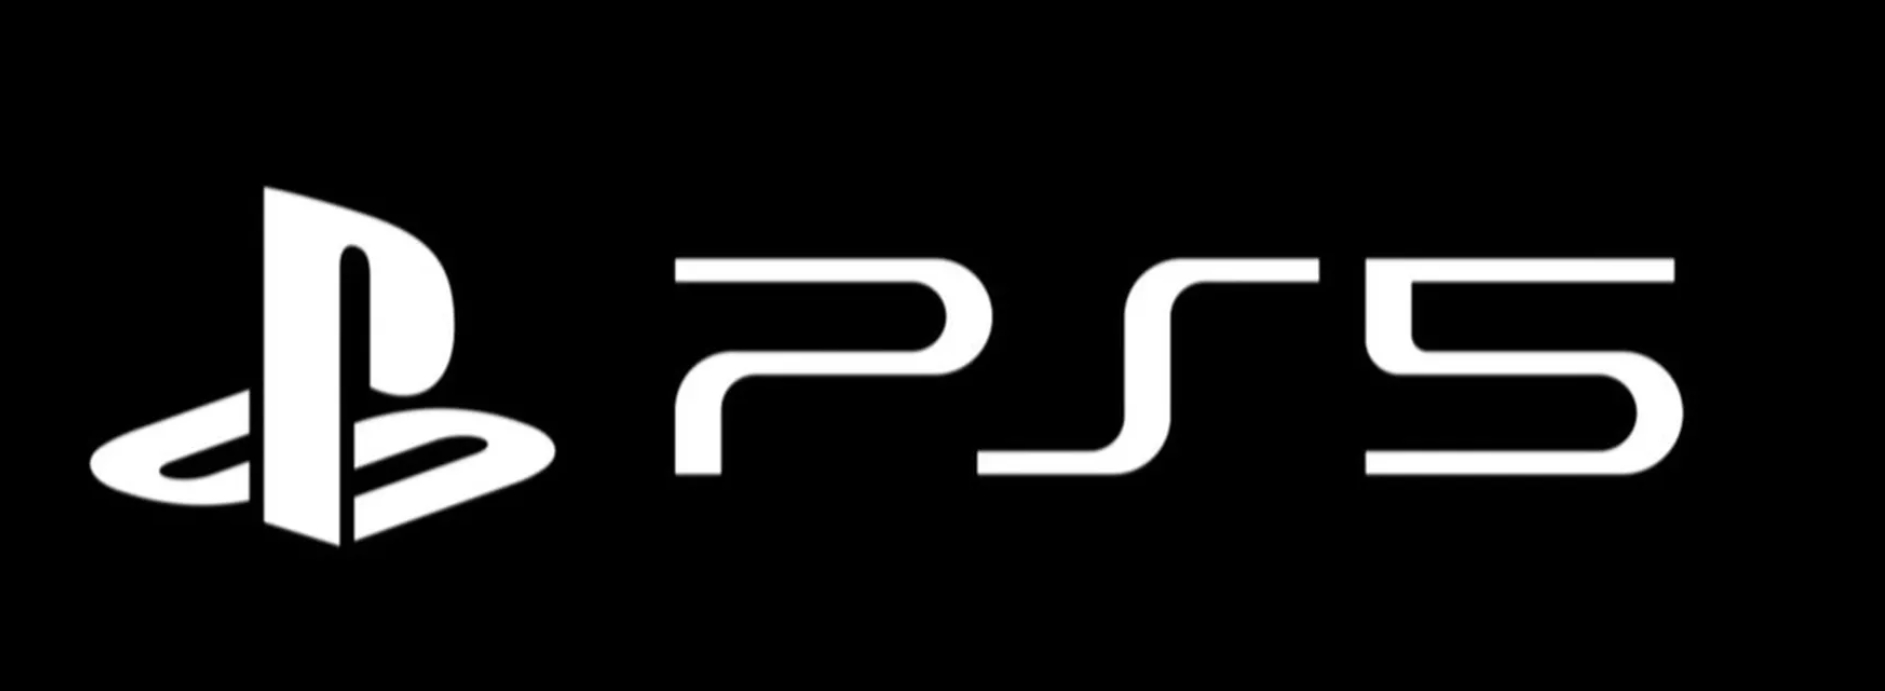 CES 2020: Sony pokazało logo PS5 i pochwaliło się sprzedażą PS4